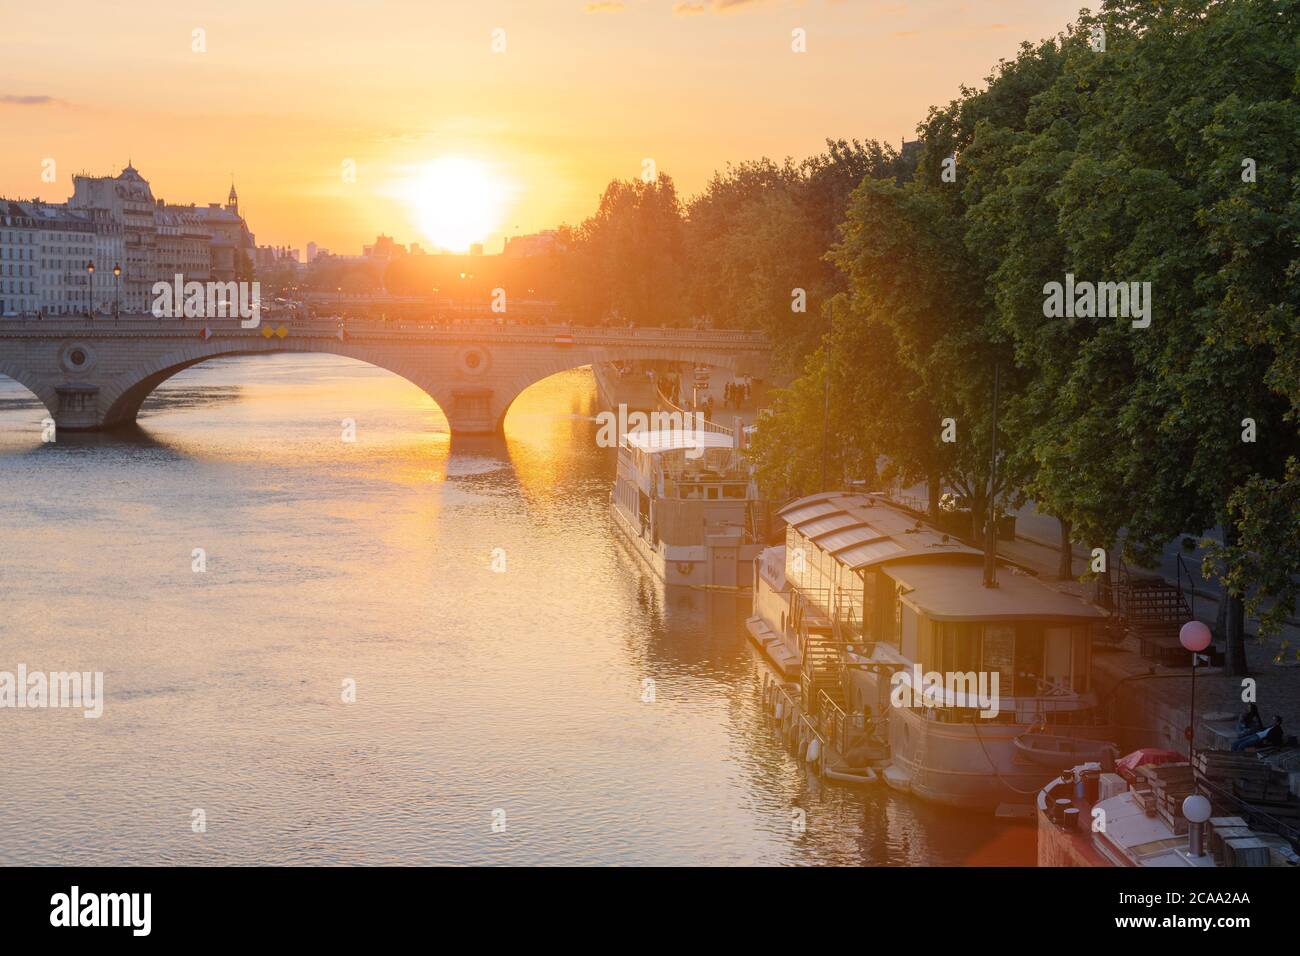 PARIS, FRANCE - coucher de soleil sur la seine. Paris est l'une des destinations touristiques les plus populaires d'Europe. Banque D'Images